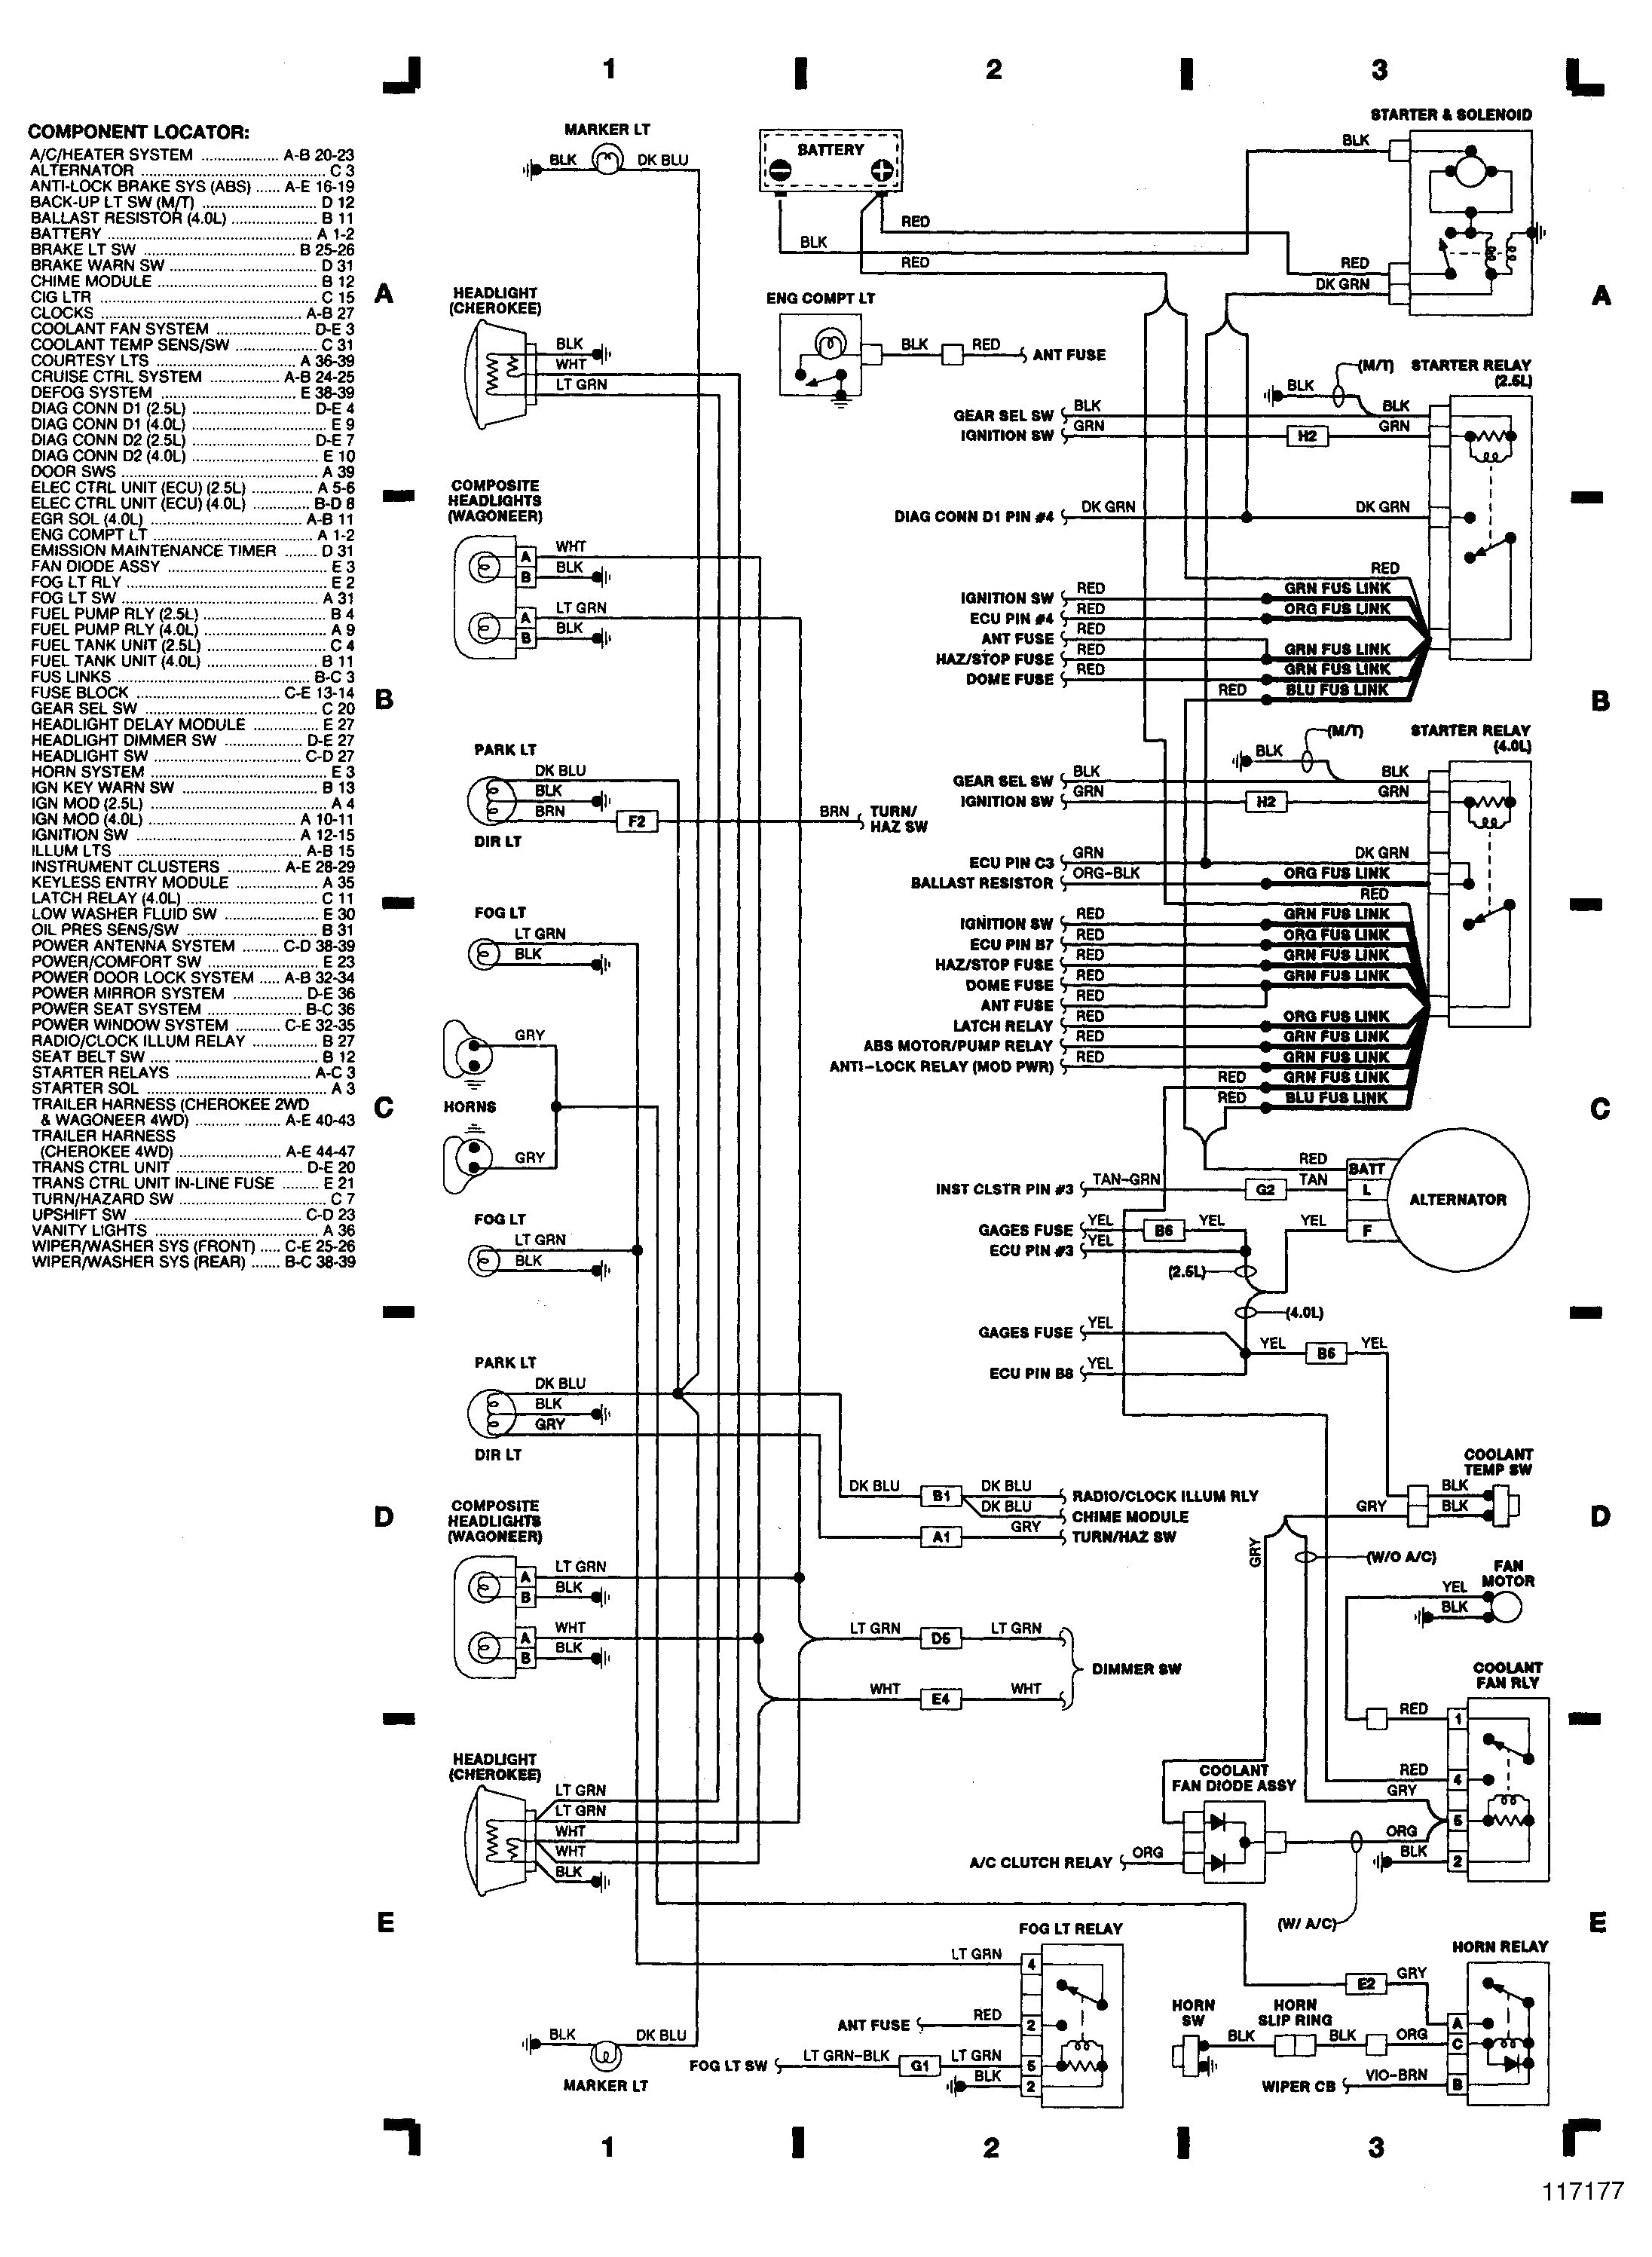 laredo wiring diagram wiring diagram option 1997 jeep laredo wiring diagram laredo wiring diagram